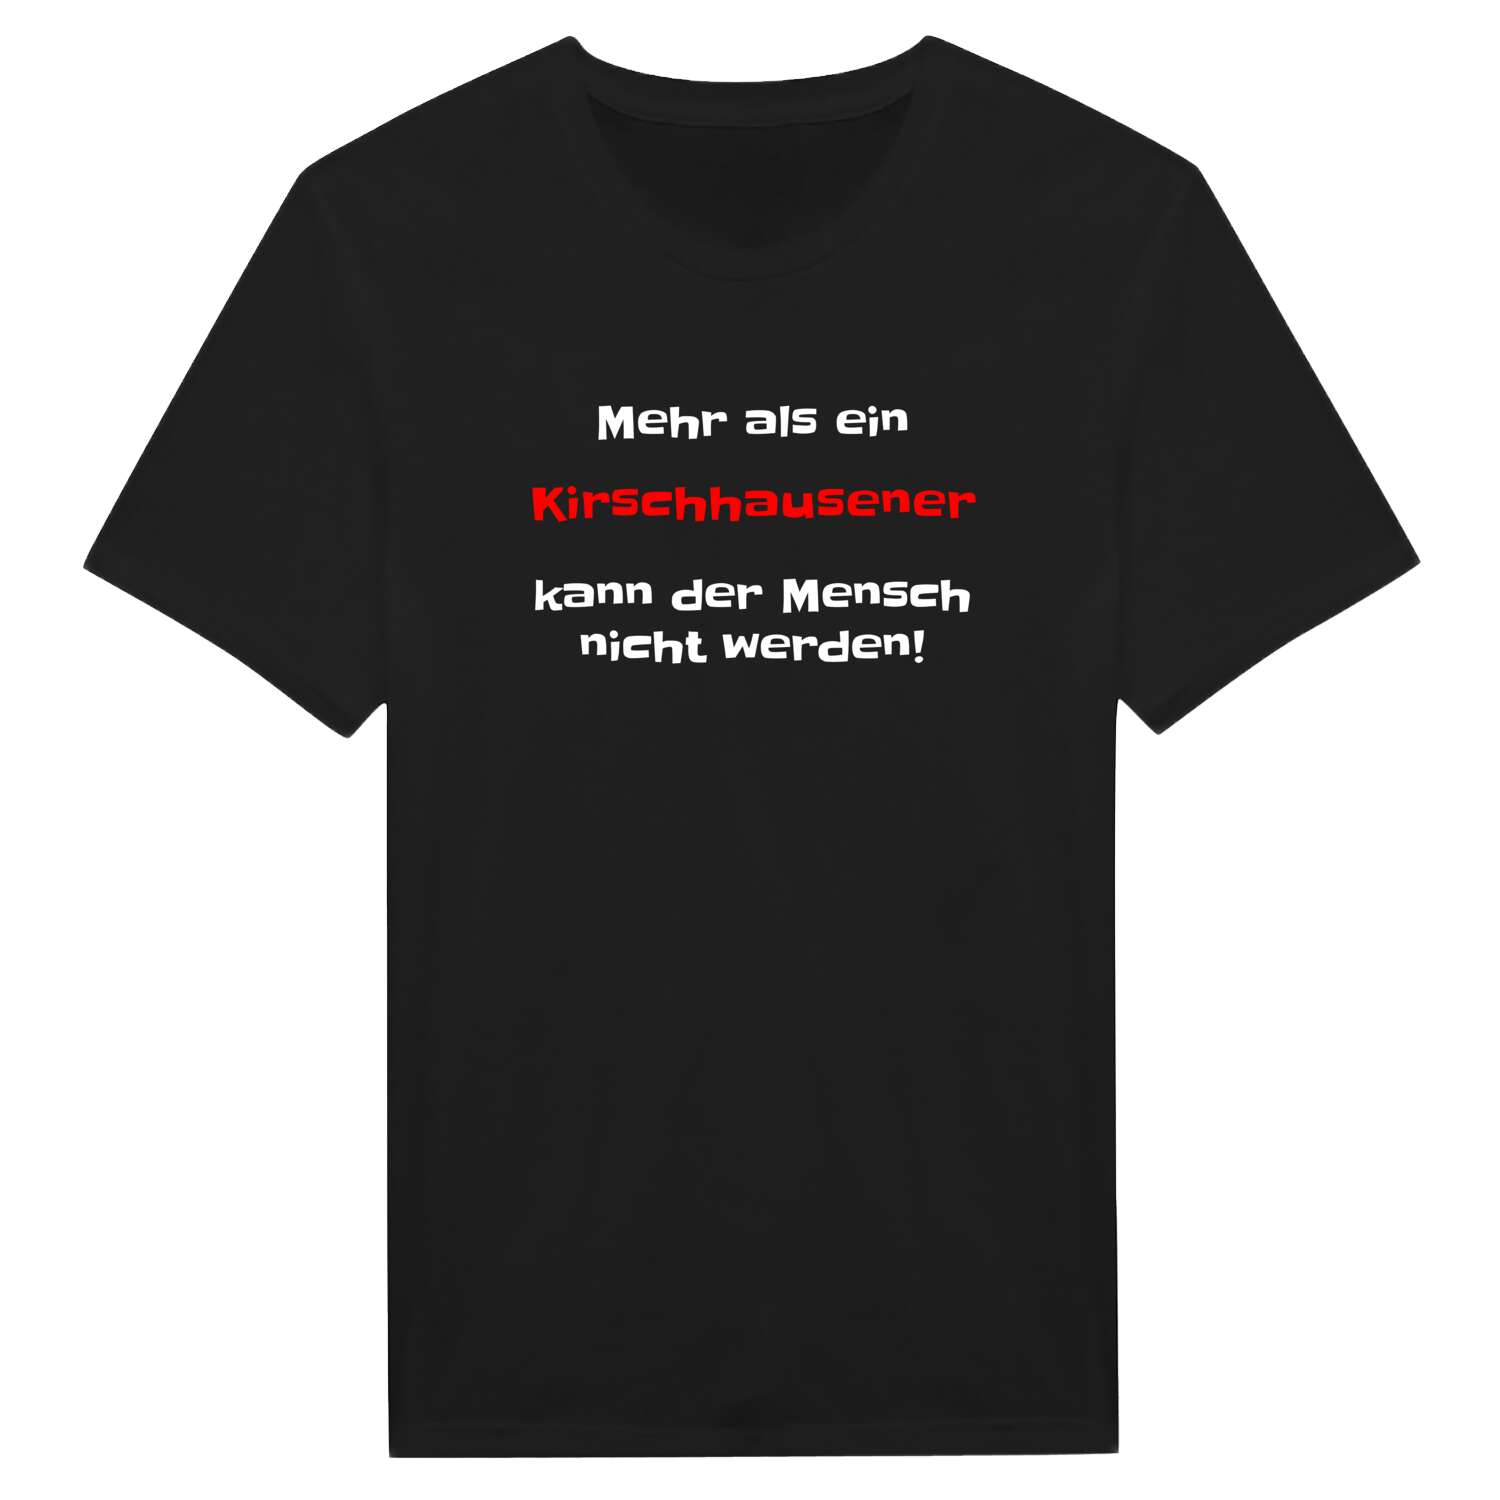 Kirschhausen T-Shirt »Mehr als ein«